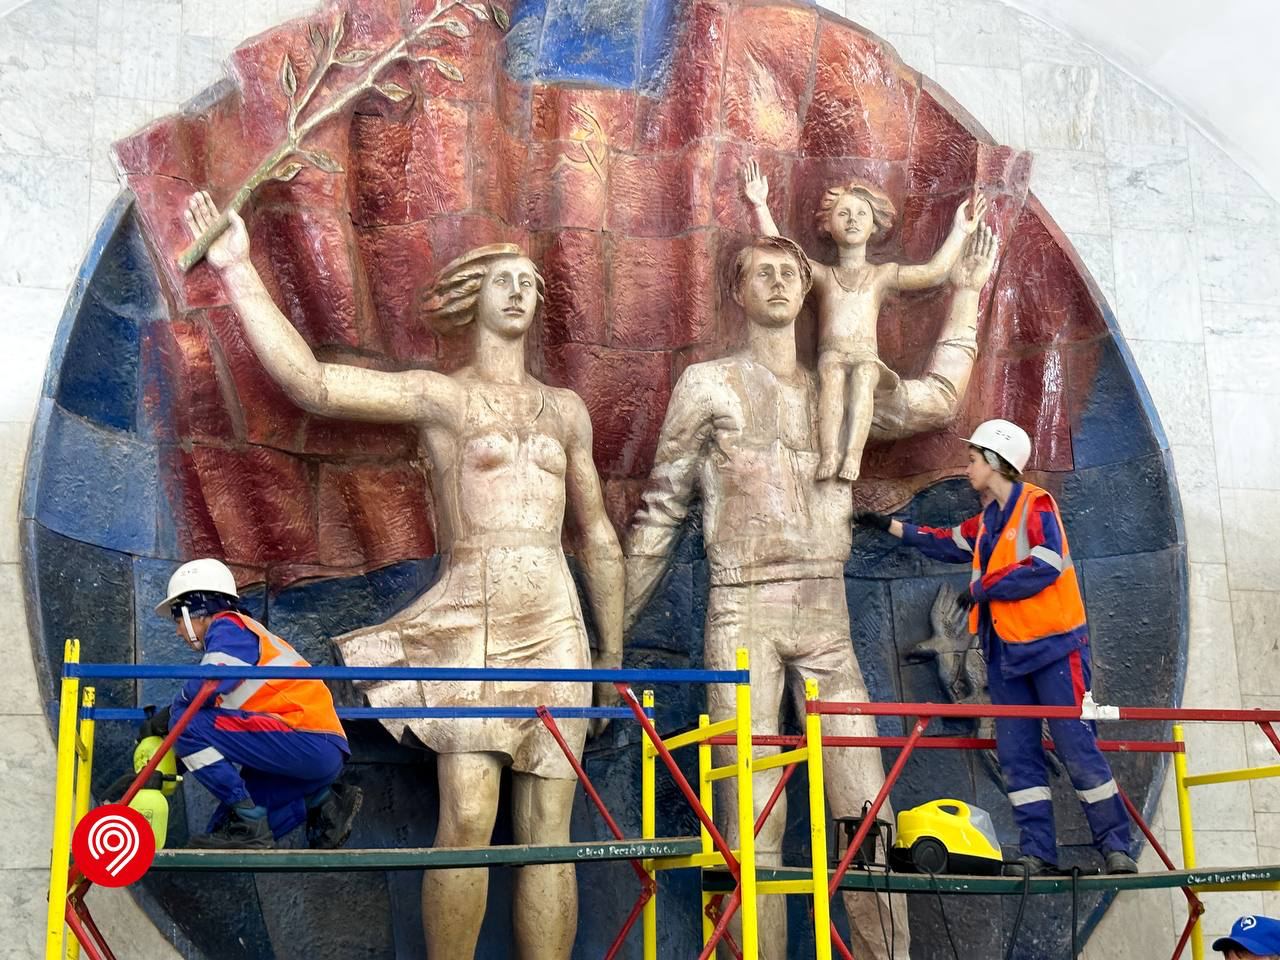 Планируется очистка скульптурных композиций и ремонт громкоговорителей. Фото: Telegram-канал Дептранса 